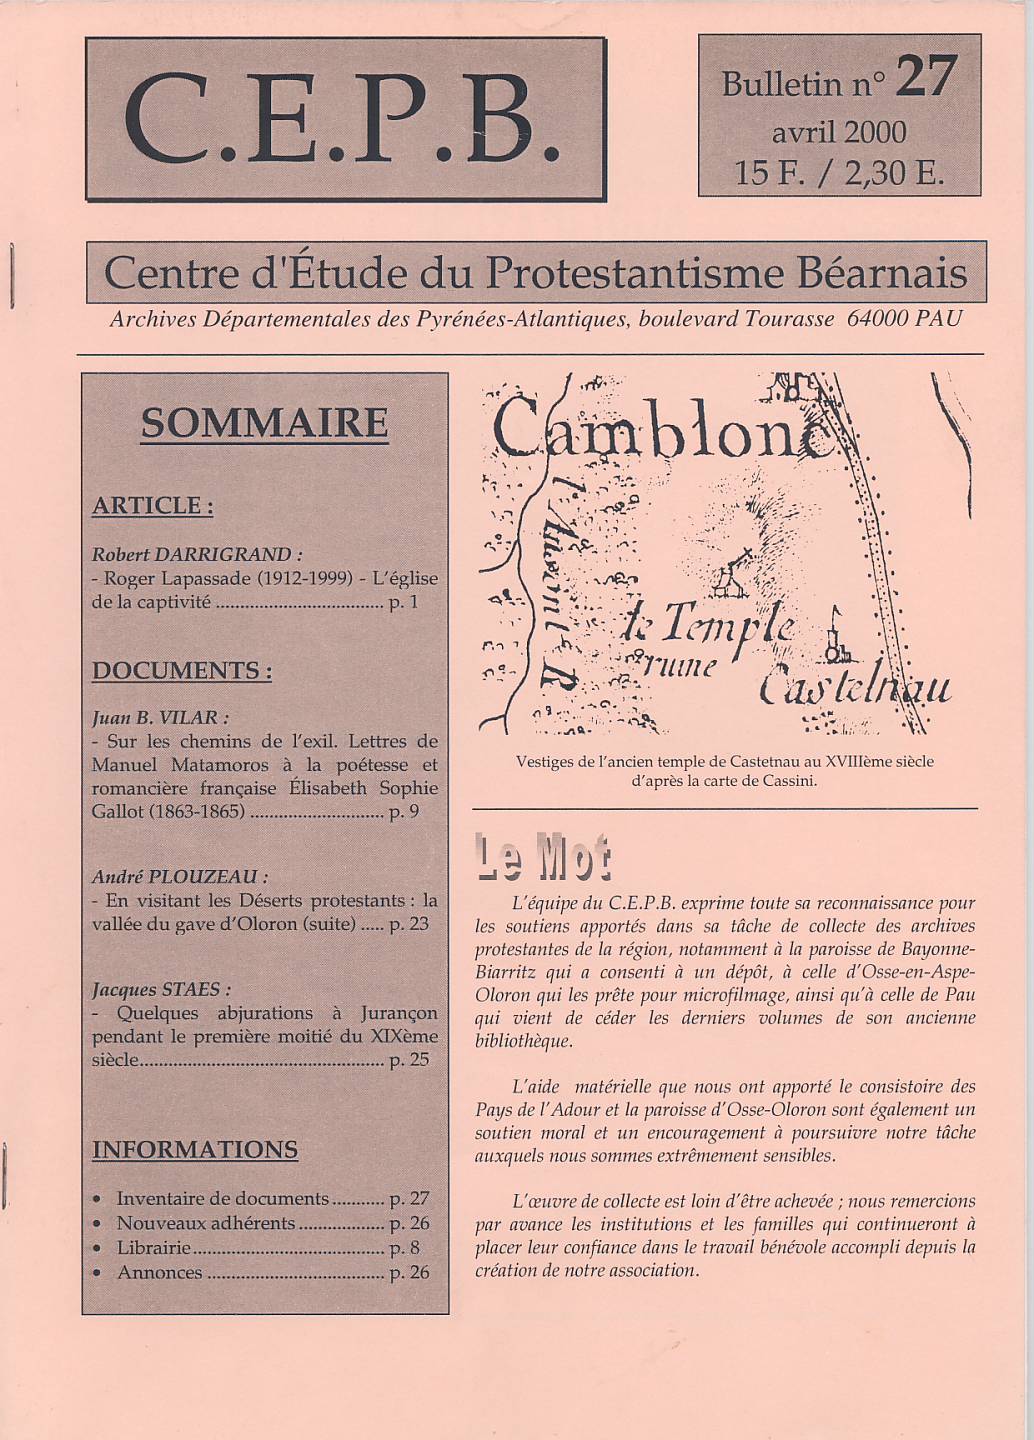 CEPB protestantisme Béarn bulletin 27